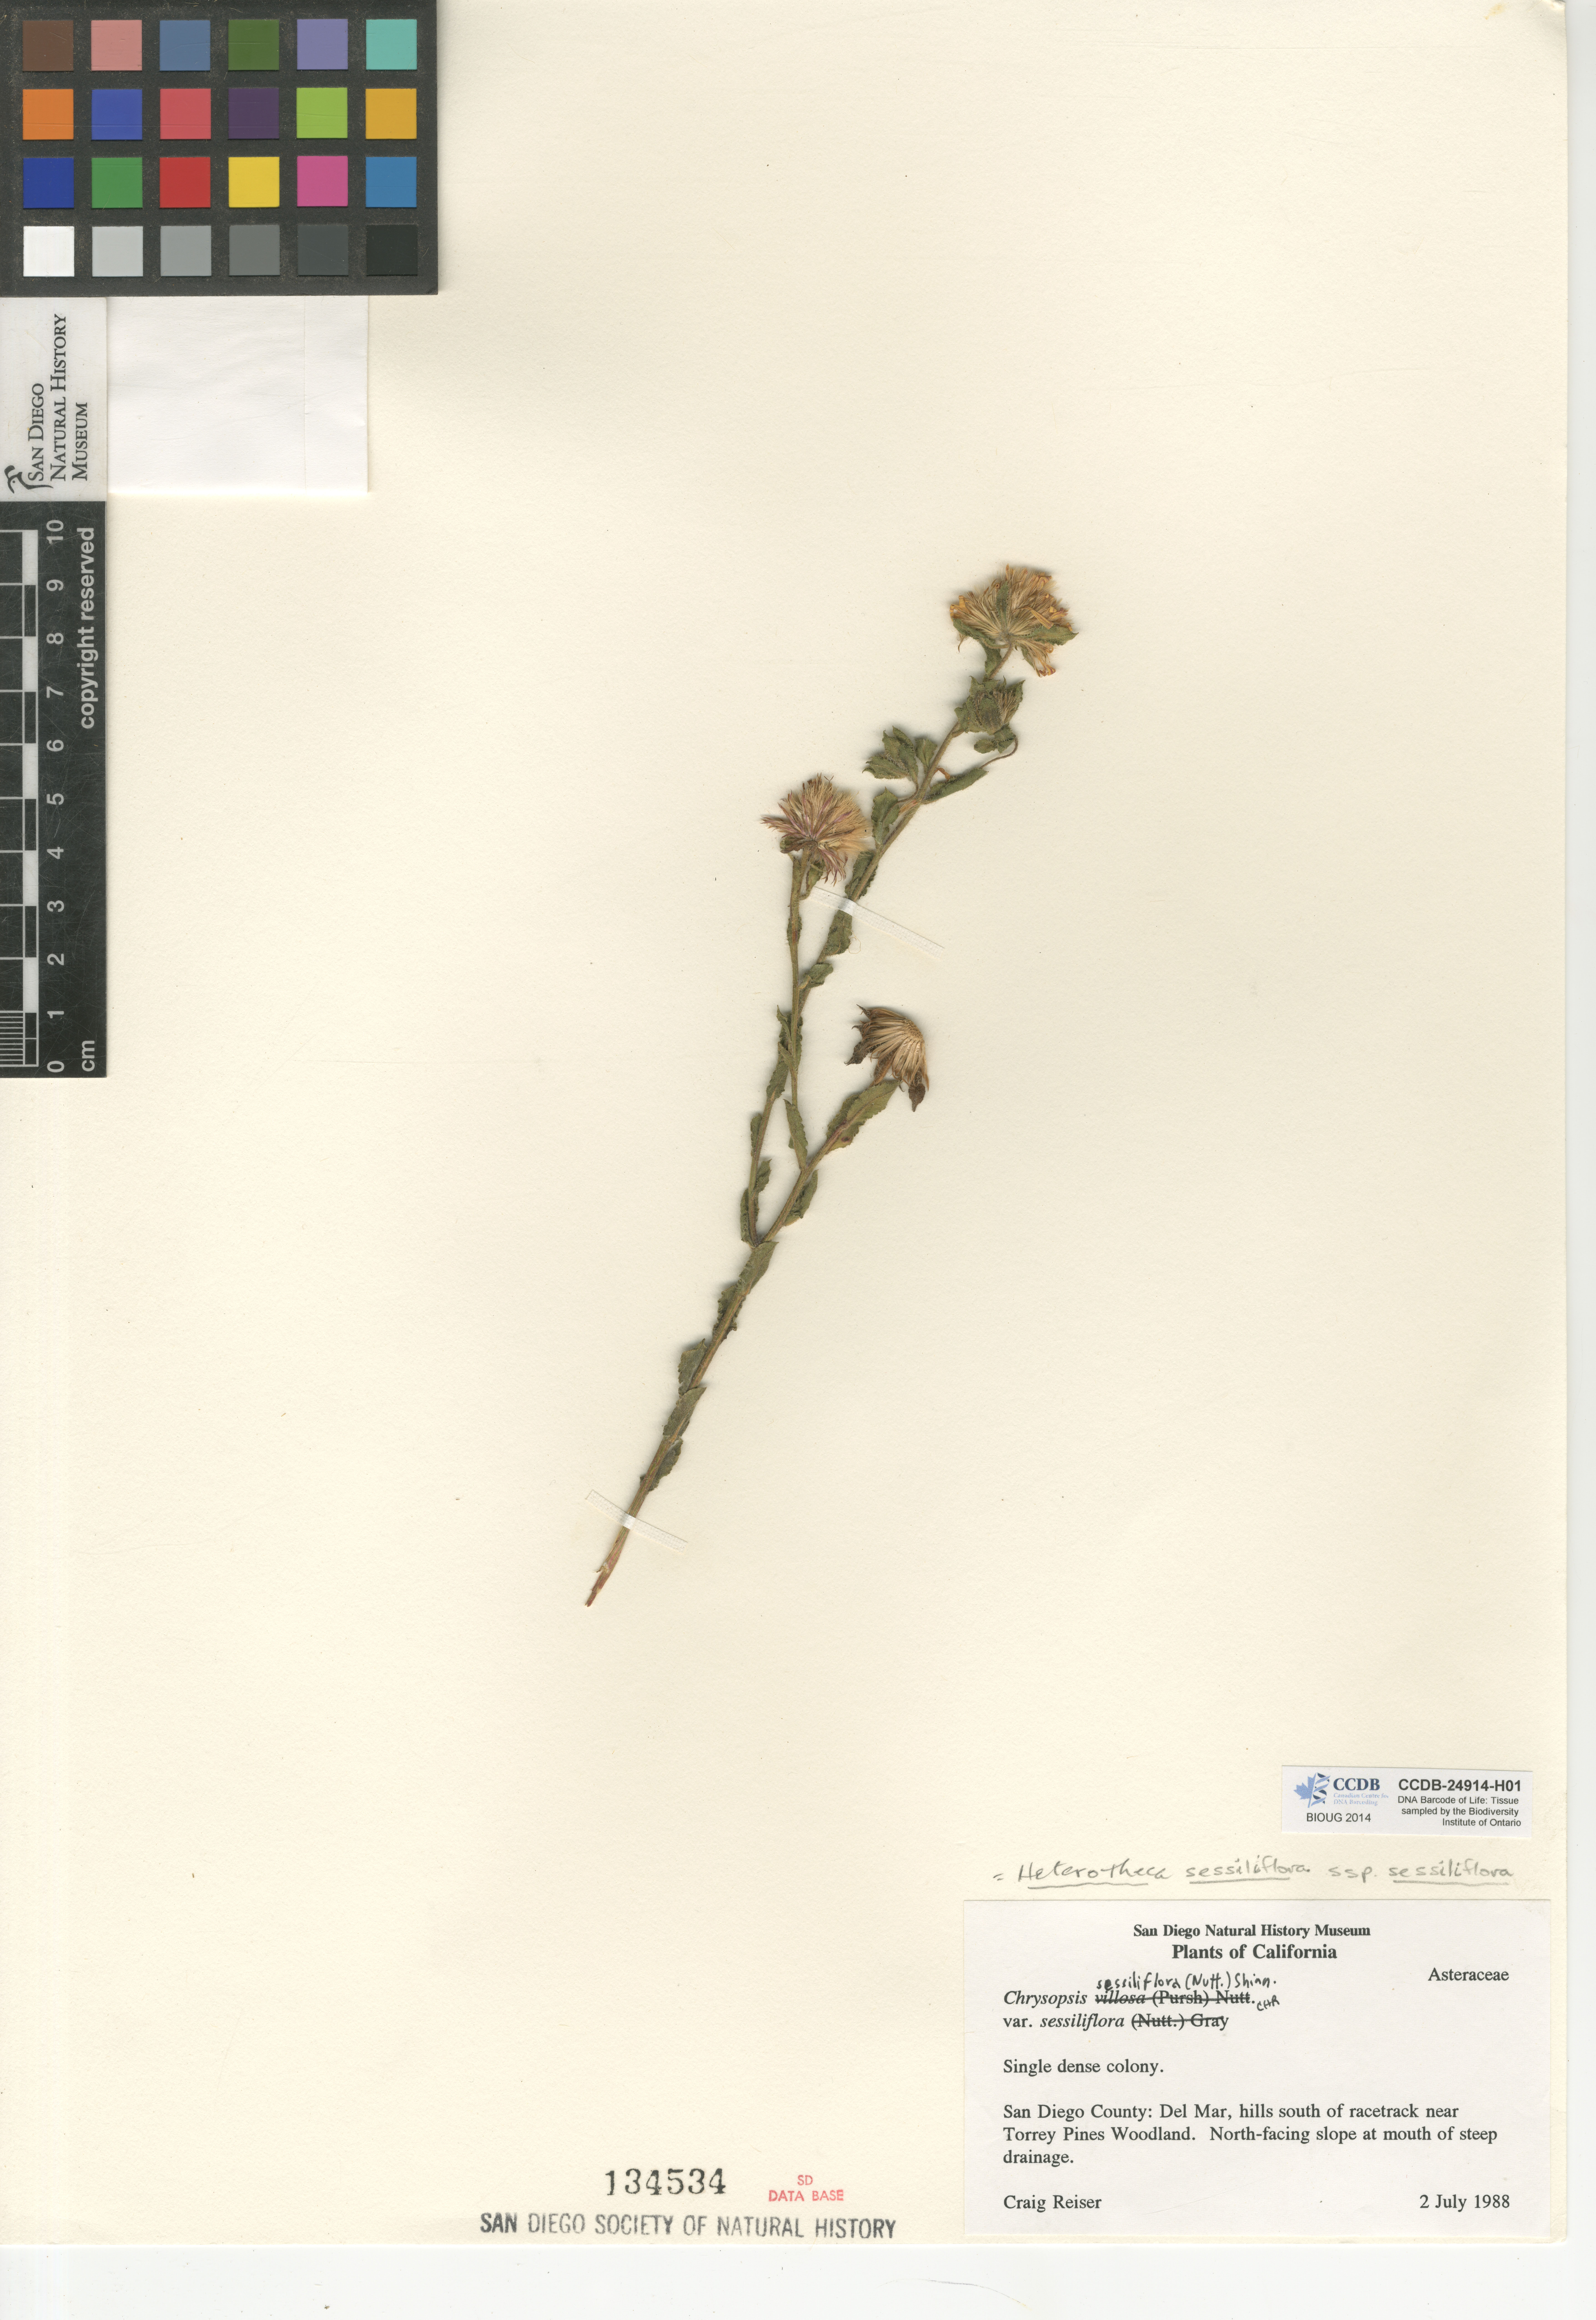 Heterotheca sessiliflora subsp. sessiliflora image